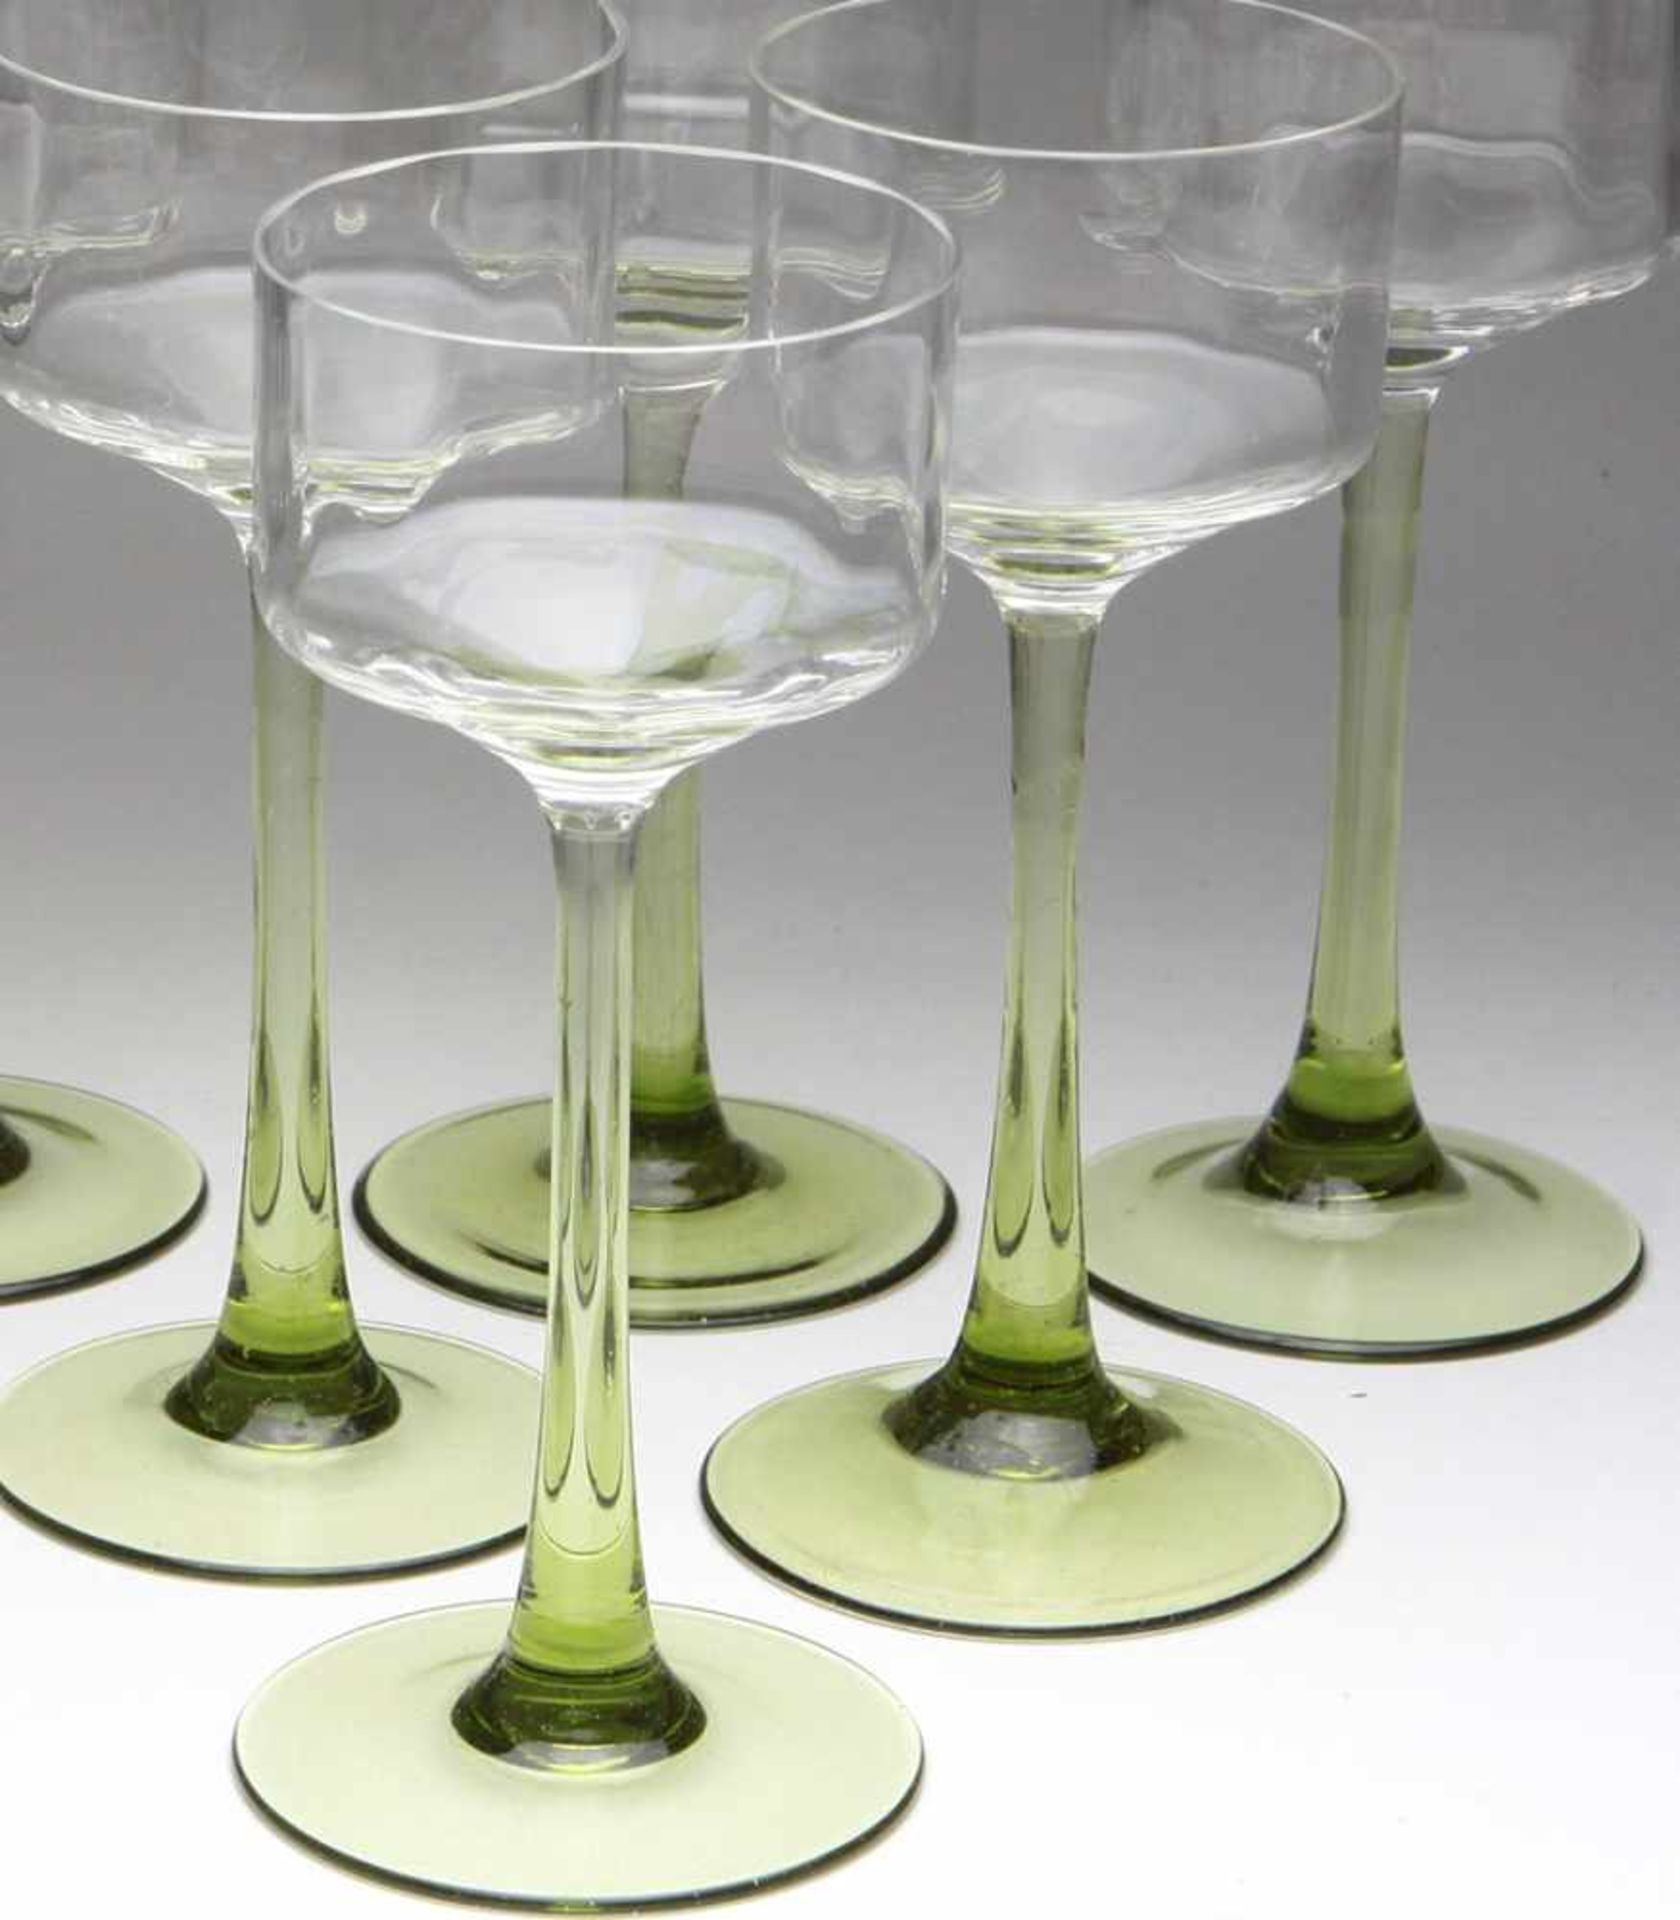 Satz Jugendstil Weinkelche um 1910farbloses u. grünes Glas mundgeblasen, zylindrische optisch - Bild 2 aus 2